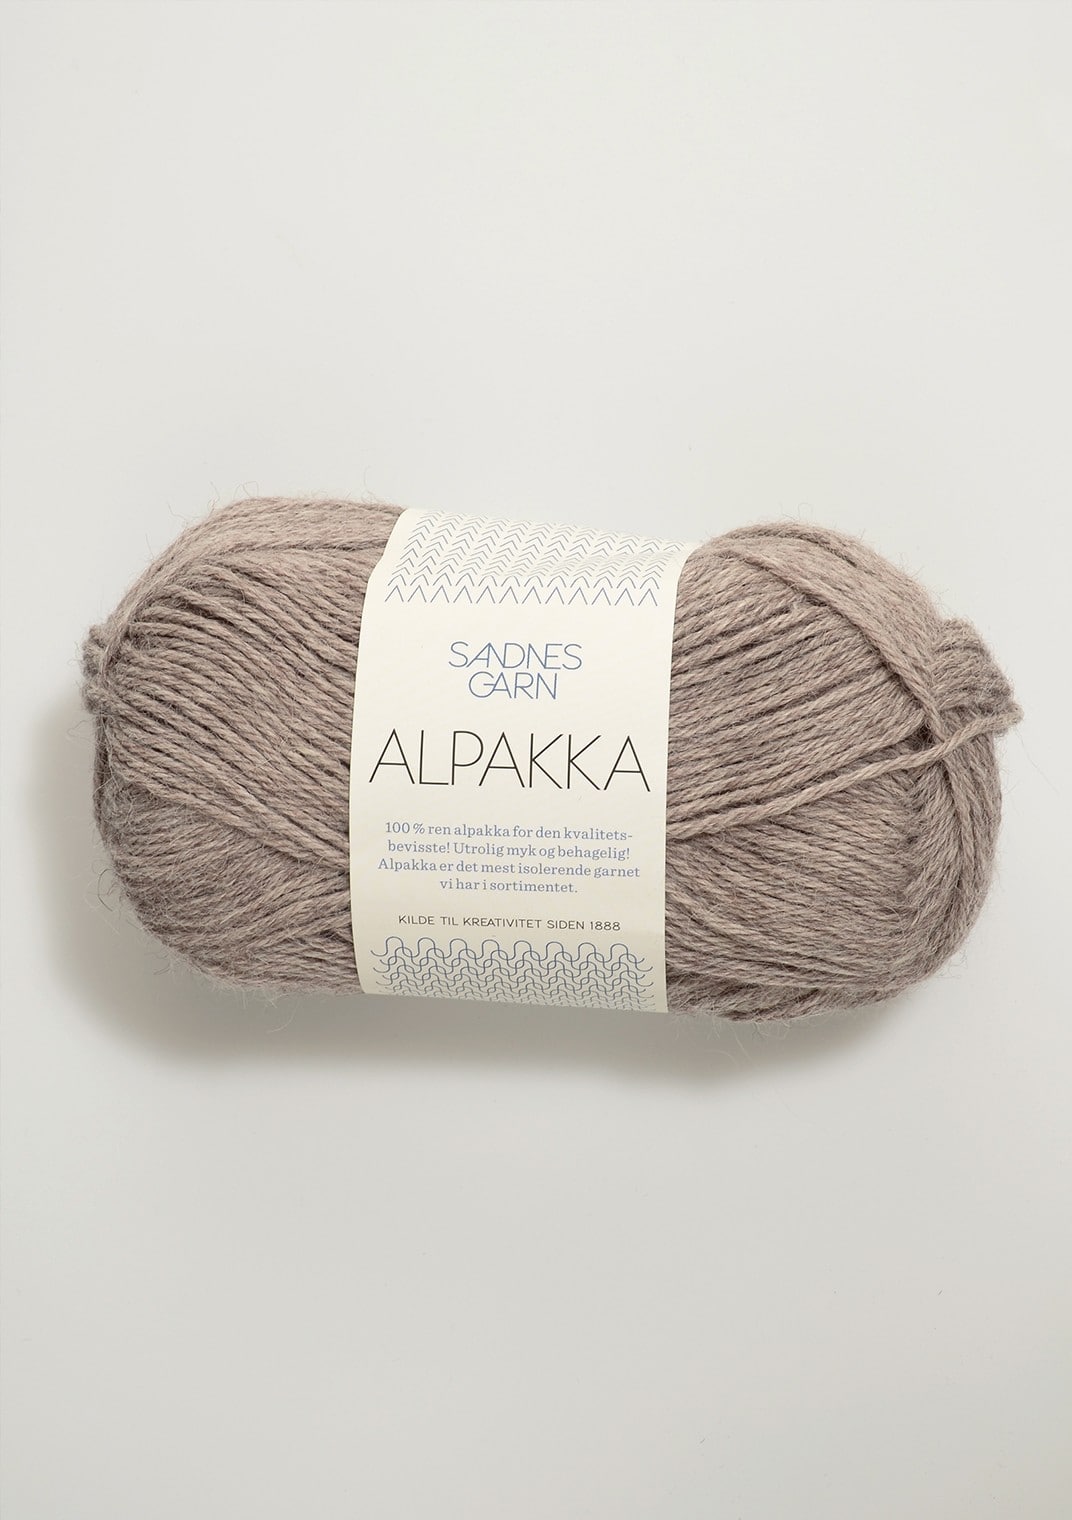 (Alpaca) yarn by Sandes